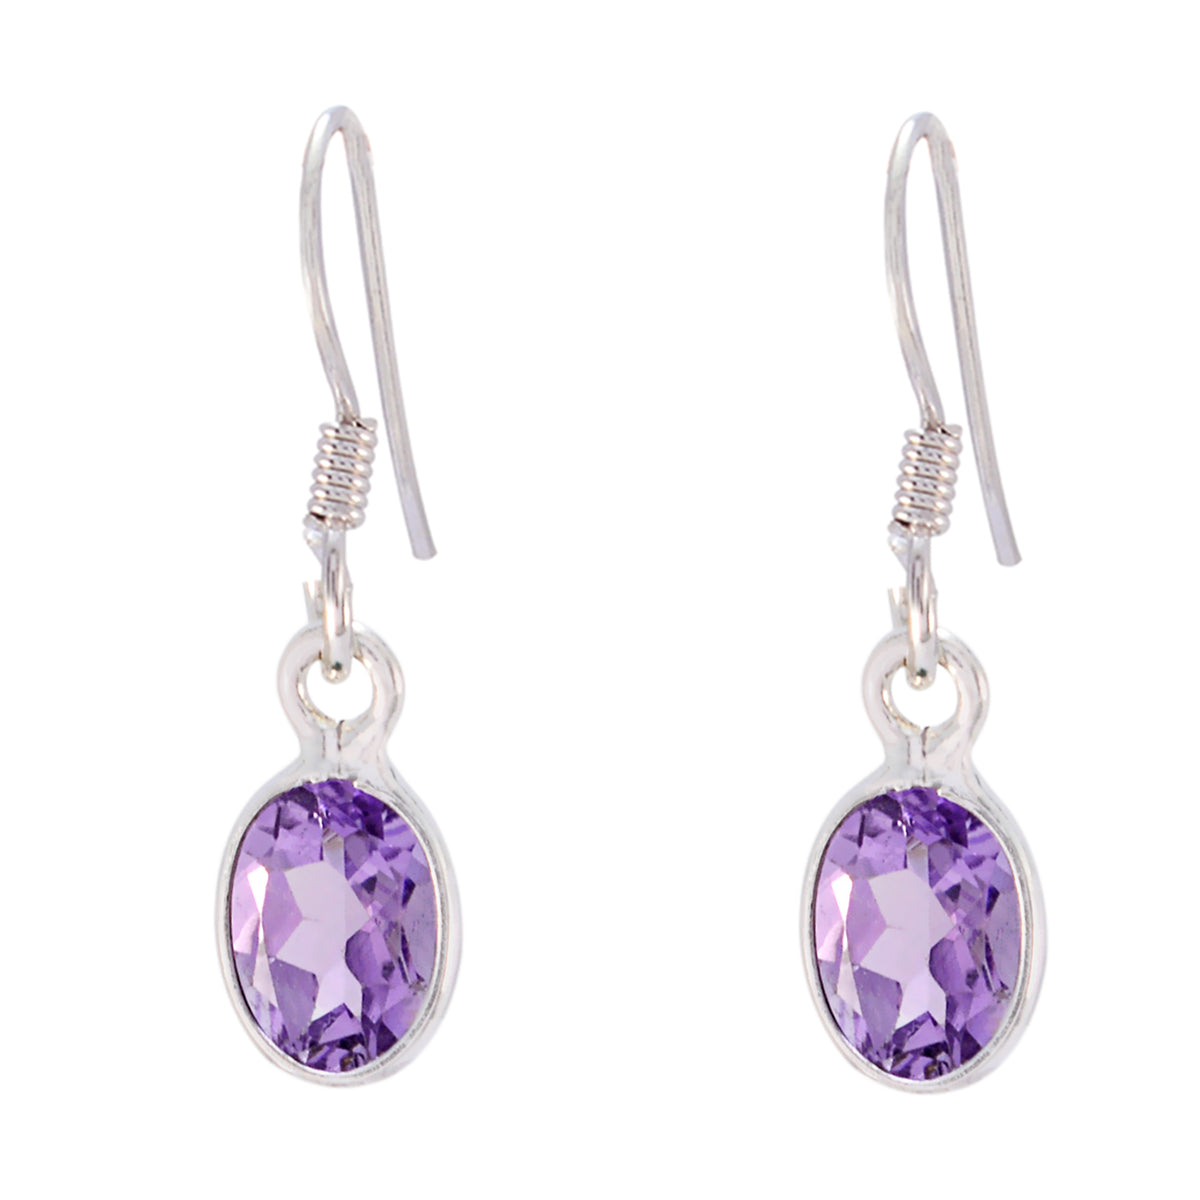 Riyo Genuine Gems oval Faceted Purple Amethyst Silver Earrings college student gift